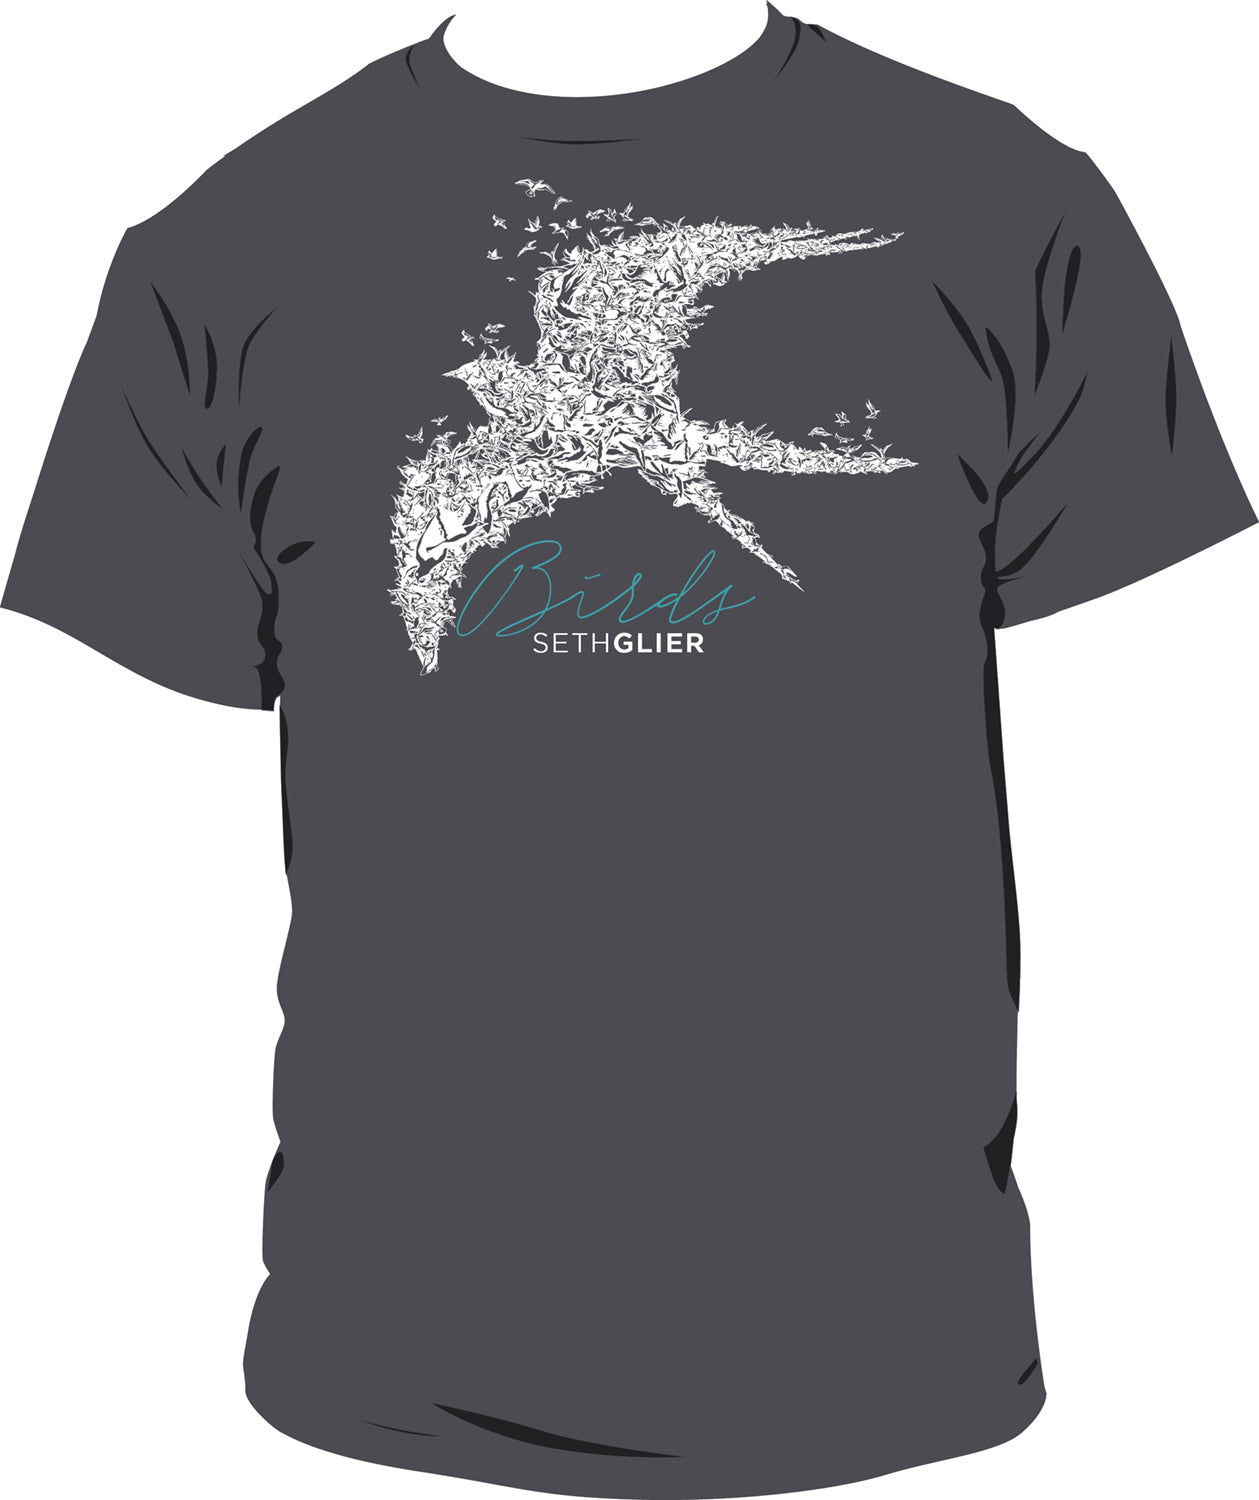 Seth Glier "Birds" T-Shirt